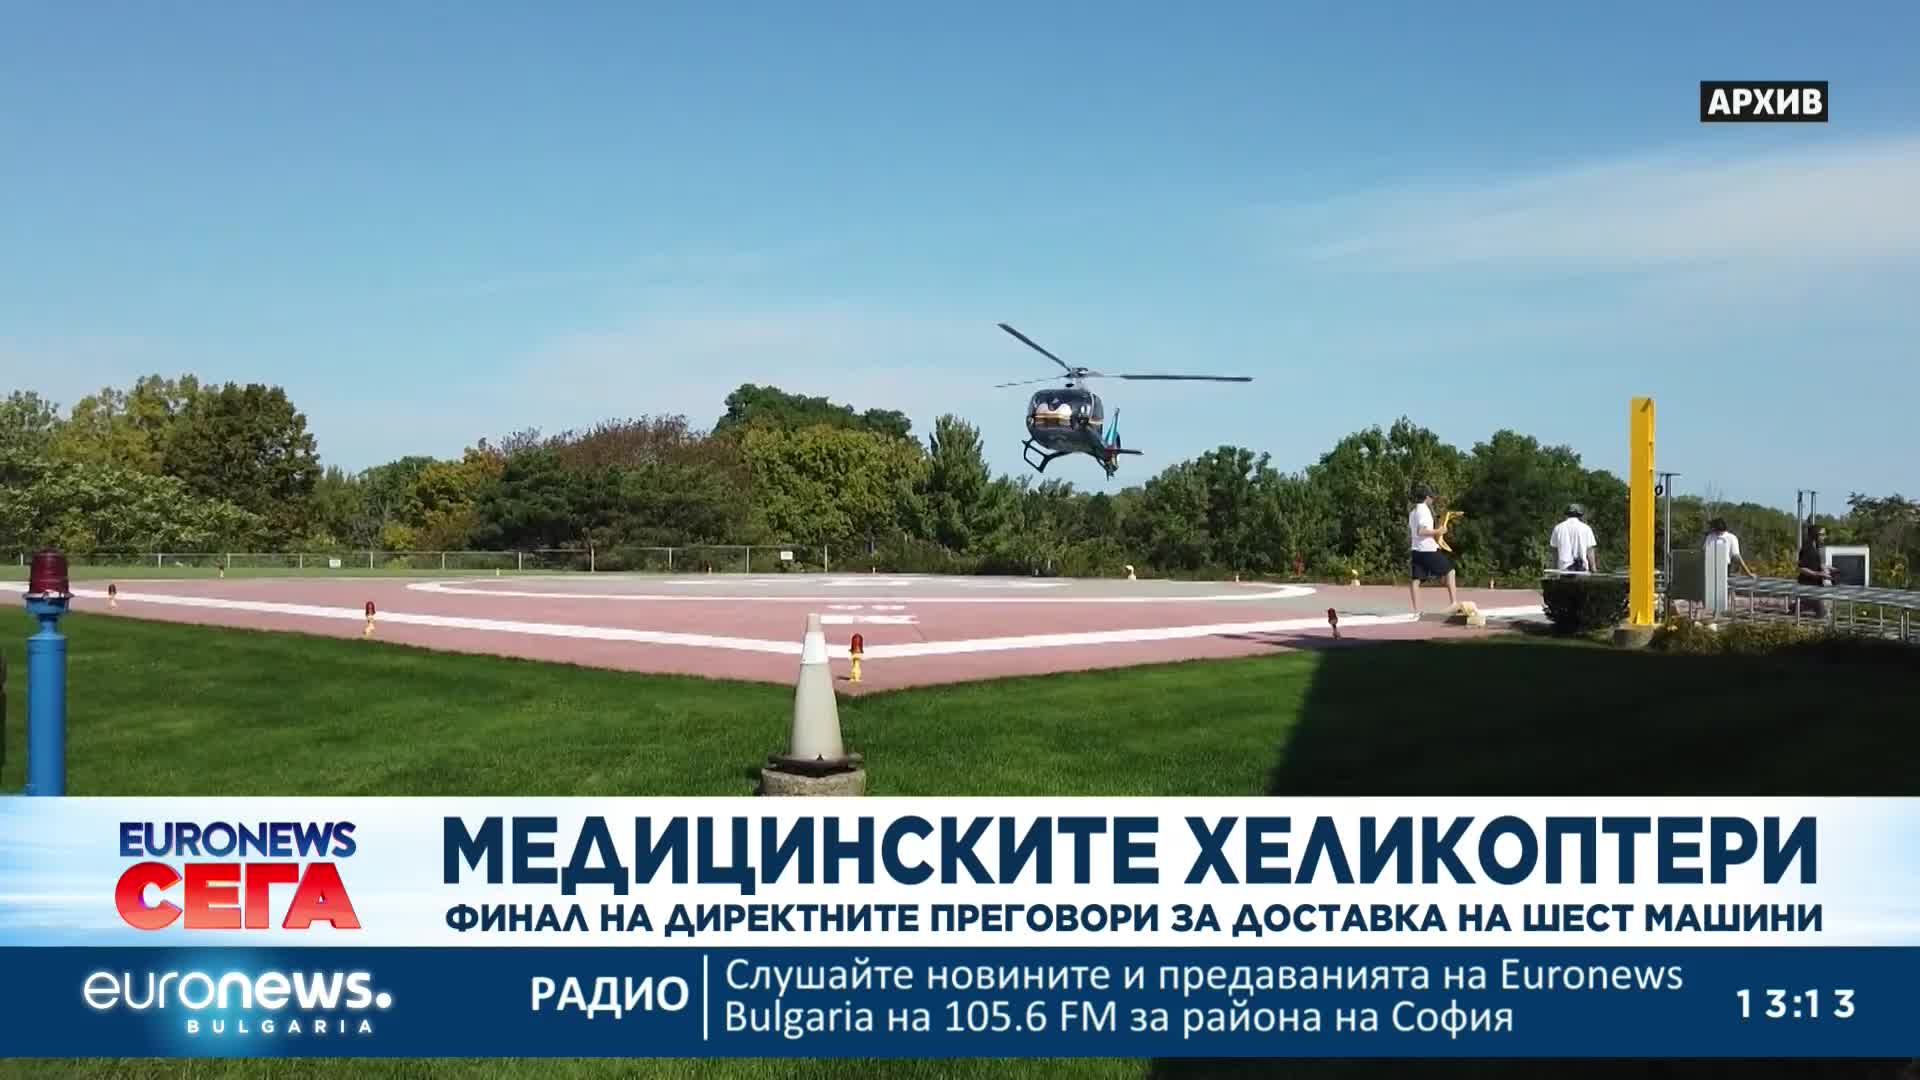 Финализират преговорите за доставка на медицински хеликоптери